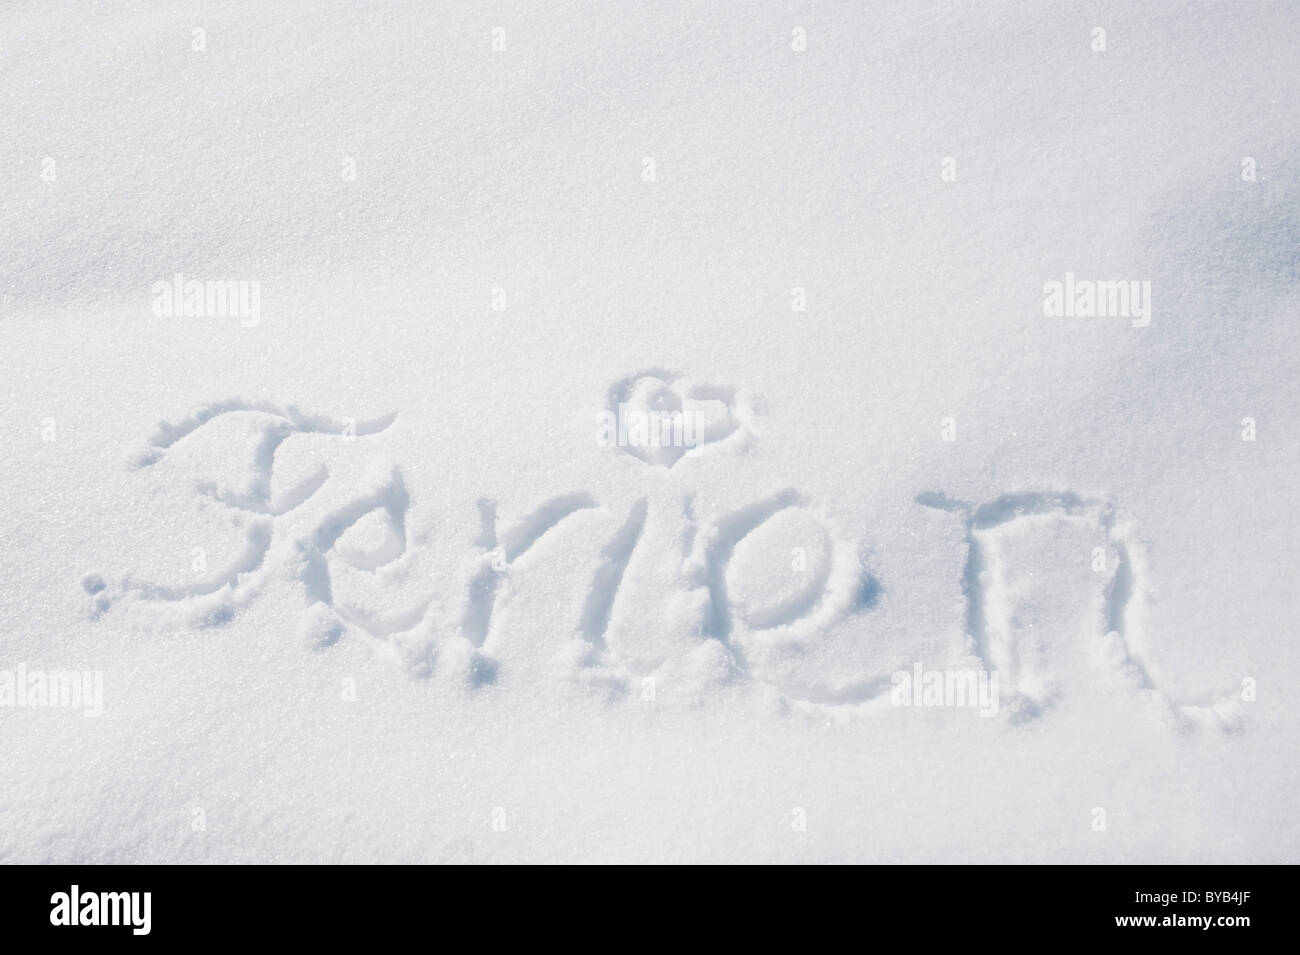 La parola Ferien o vacanza scritto nella neve, in inverno, Landshut, Bassa Baviera, Baviera, Germania, Europa Foto Stock